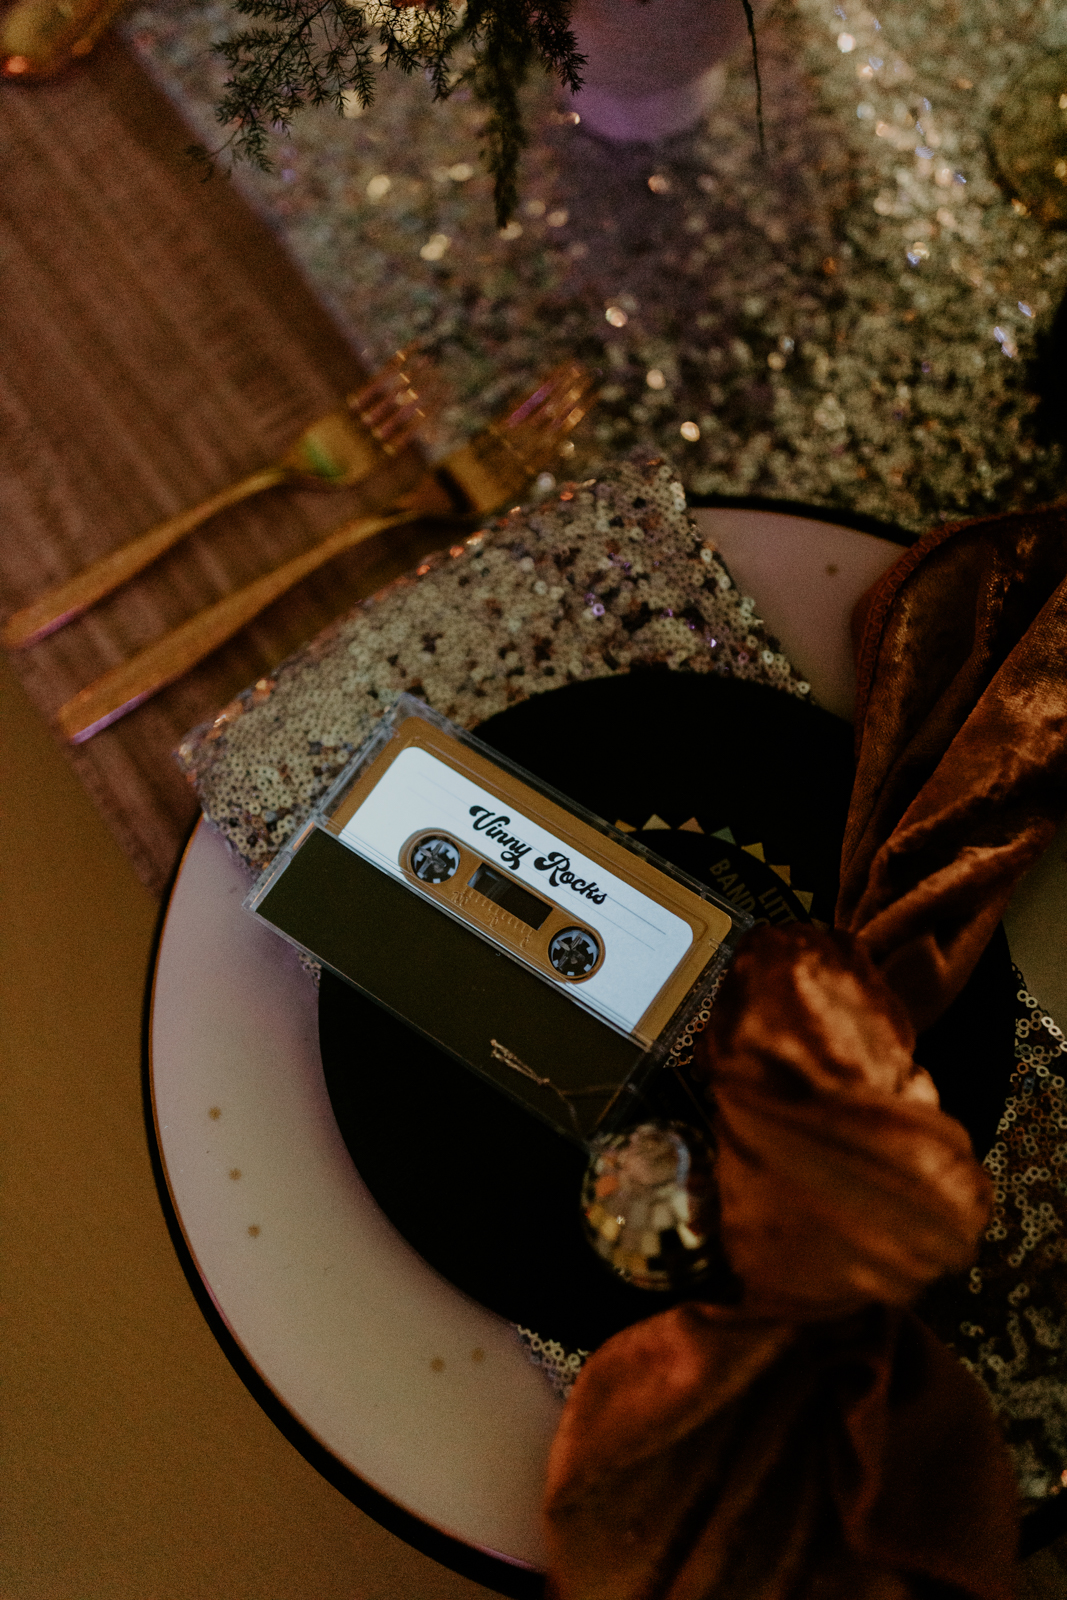 Unique Escort Cassette Tape